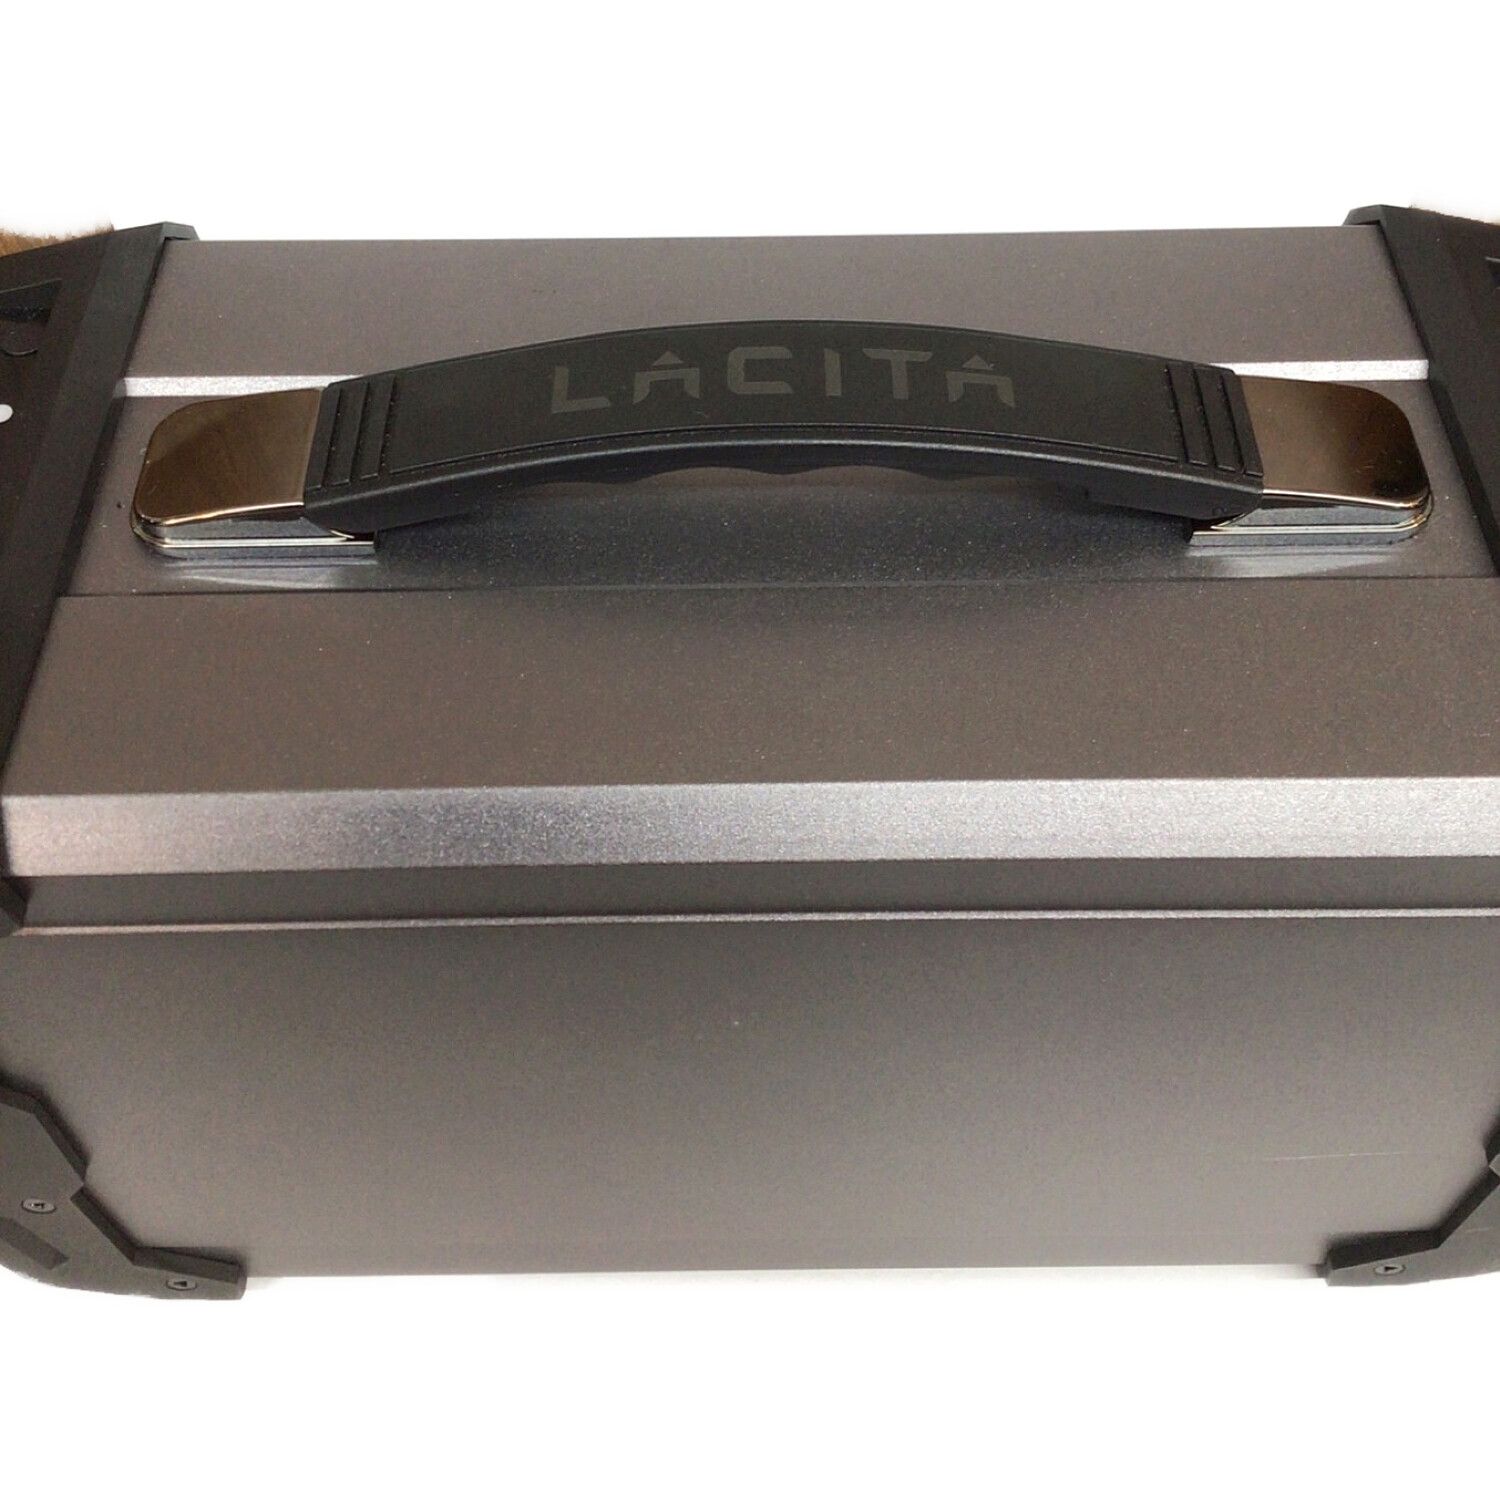 LACITA (ラチタ) ポータブル電源 ブラック ENERBOX01 CITAEB-01